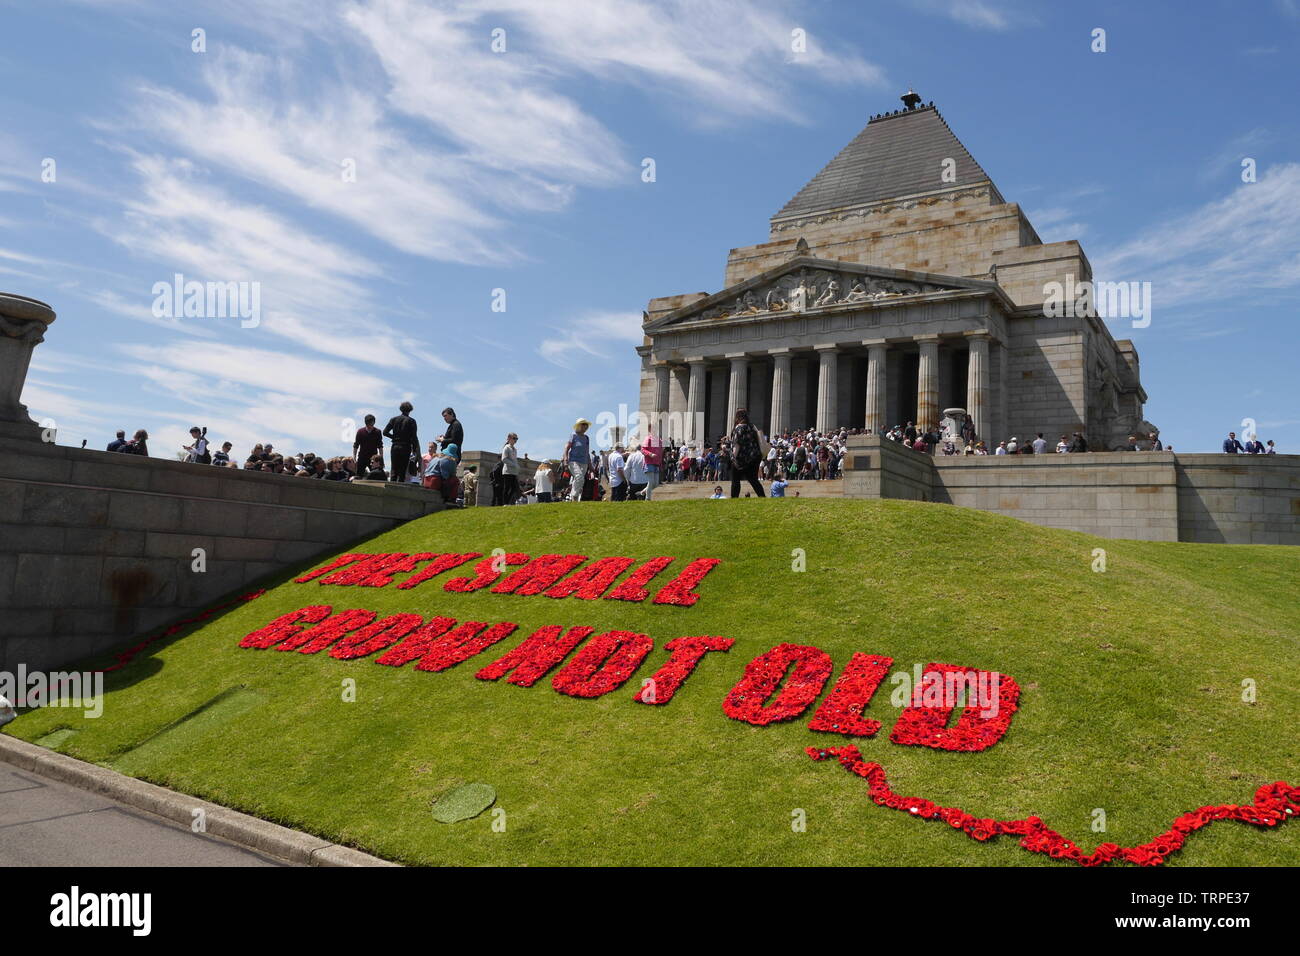 Horizontale Bild der Schrein der Erinnerung am Armistice Day mit rotem Garn Mohnblumen Rechtschreibung: Sie sollen wachsen nicht alt" auf grünem Gras im Vordergrund. Stockfoto